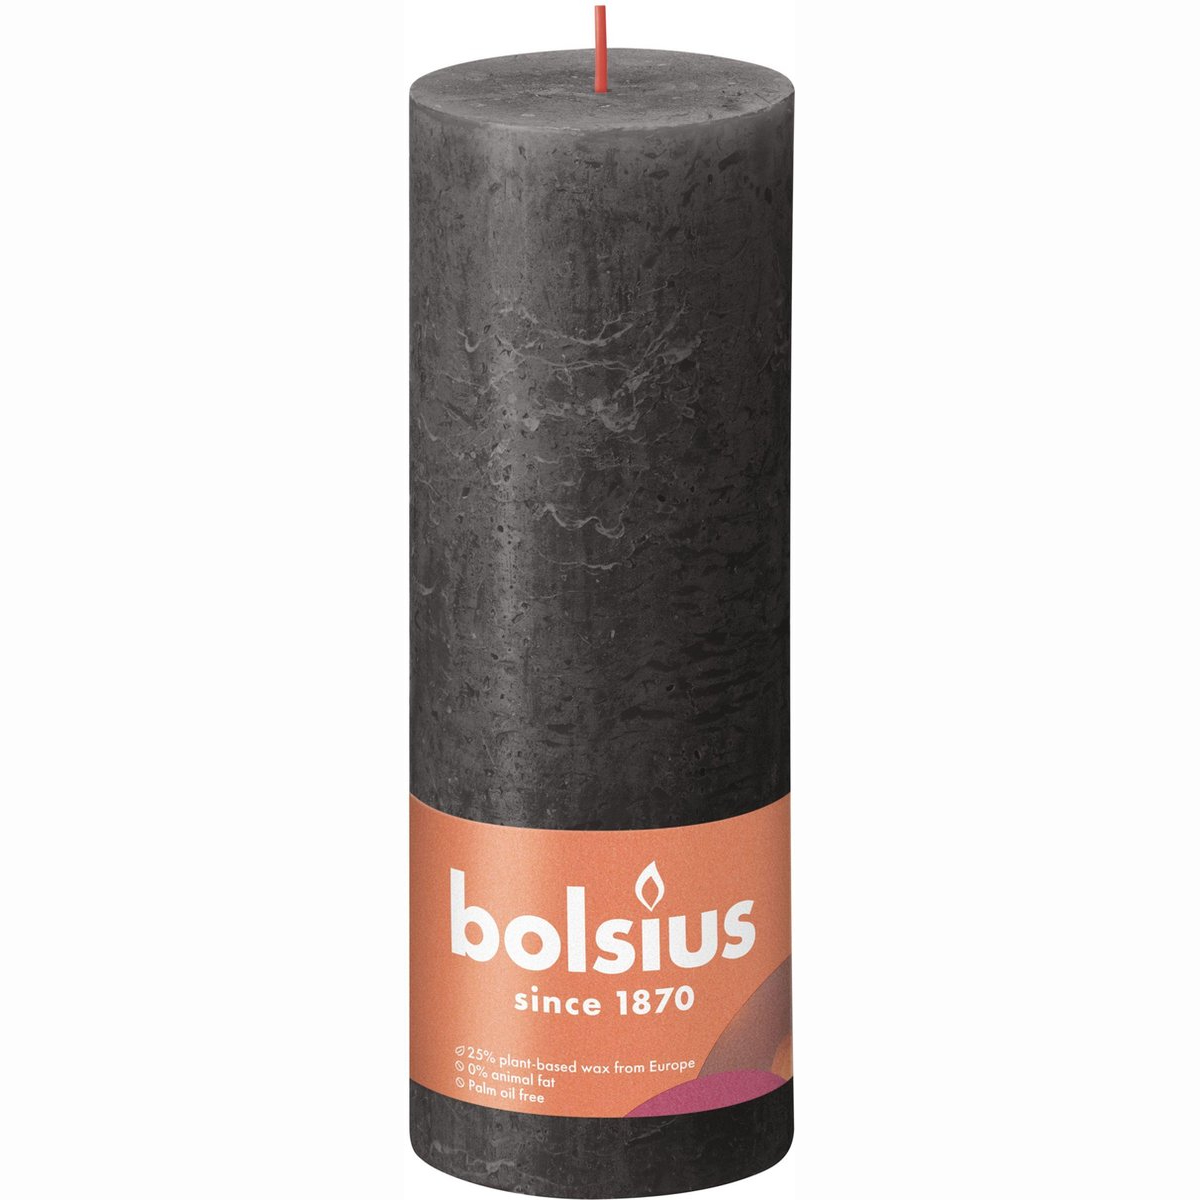 фото Свеча bolsius rustic 19х6,8 см shine буро-серая